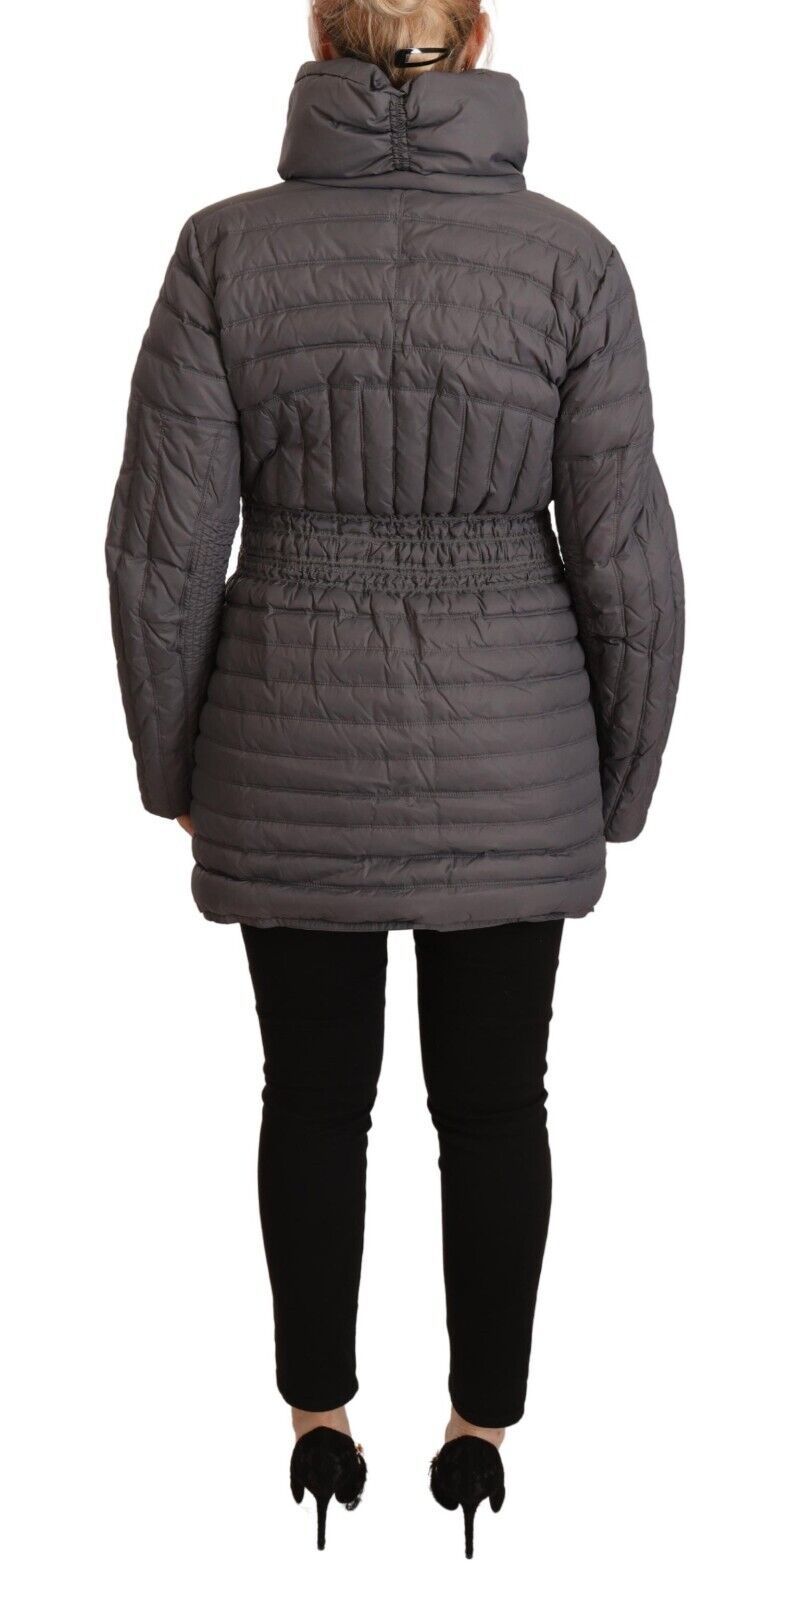 Rocobarocco grigio grigio trapuntato maniche lunghe patch zip full zip giacca